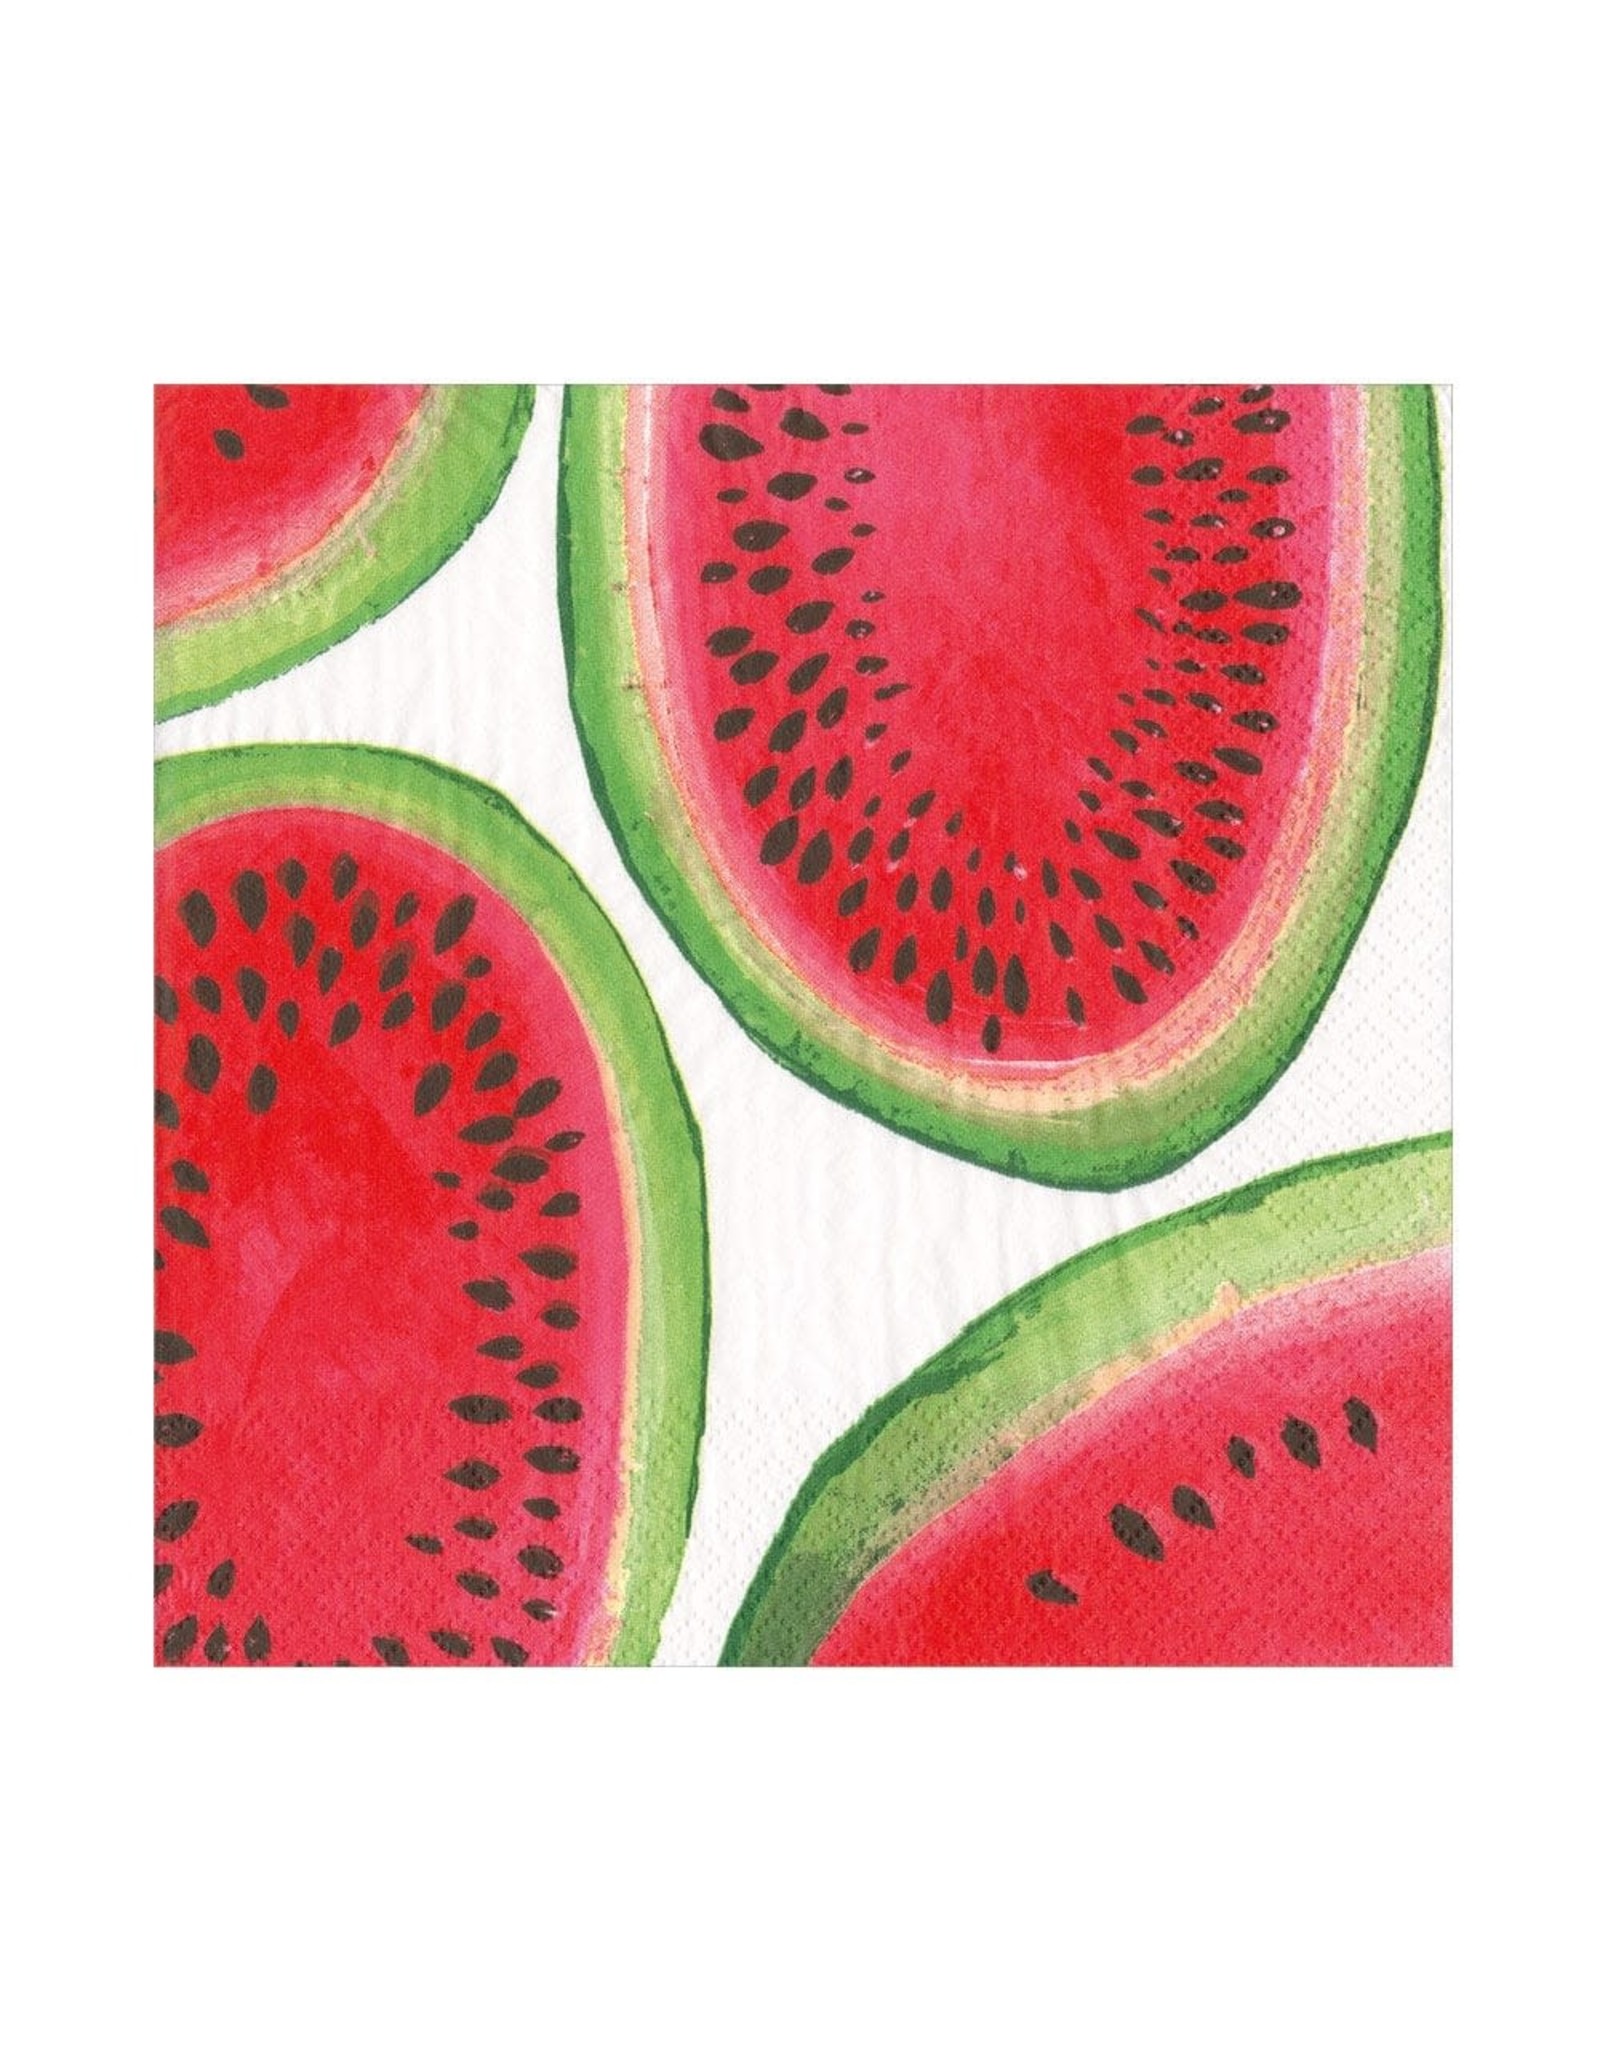 Caspari Paper Lunch Napkins 20pk Kahlo's Watermelon Collage